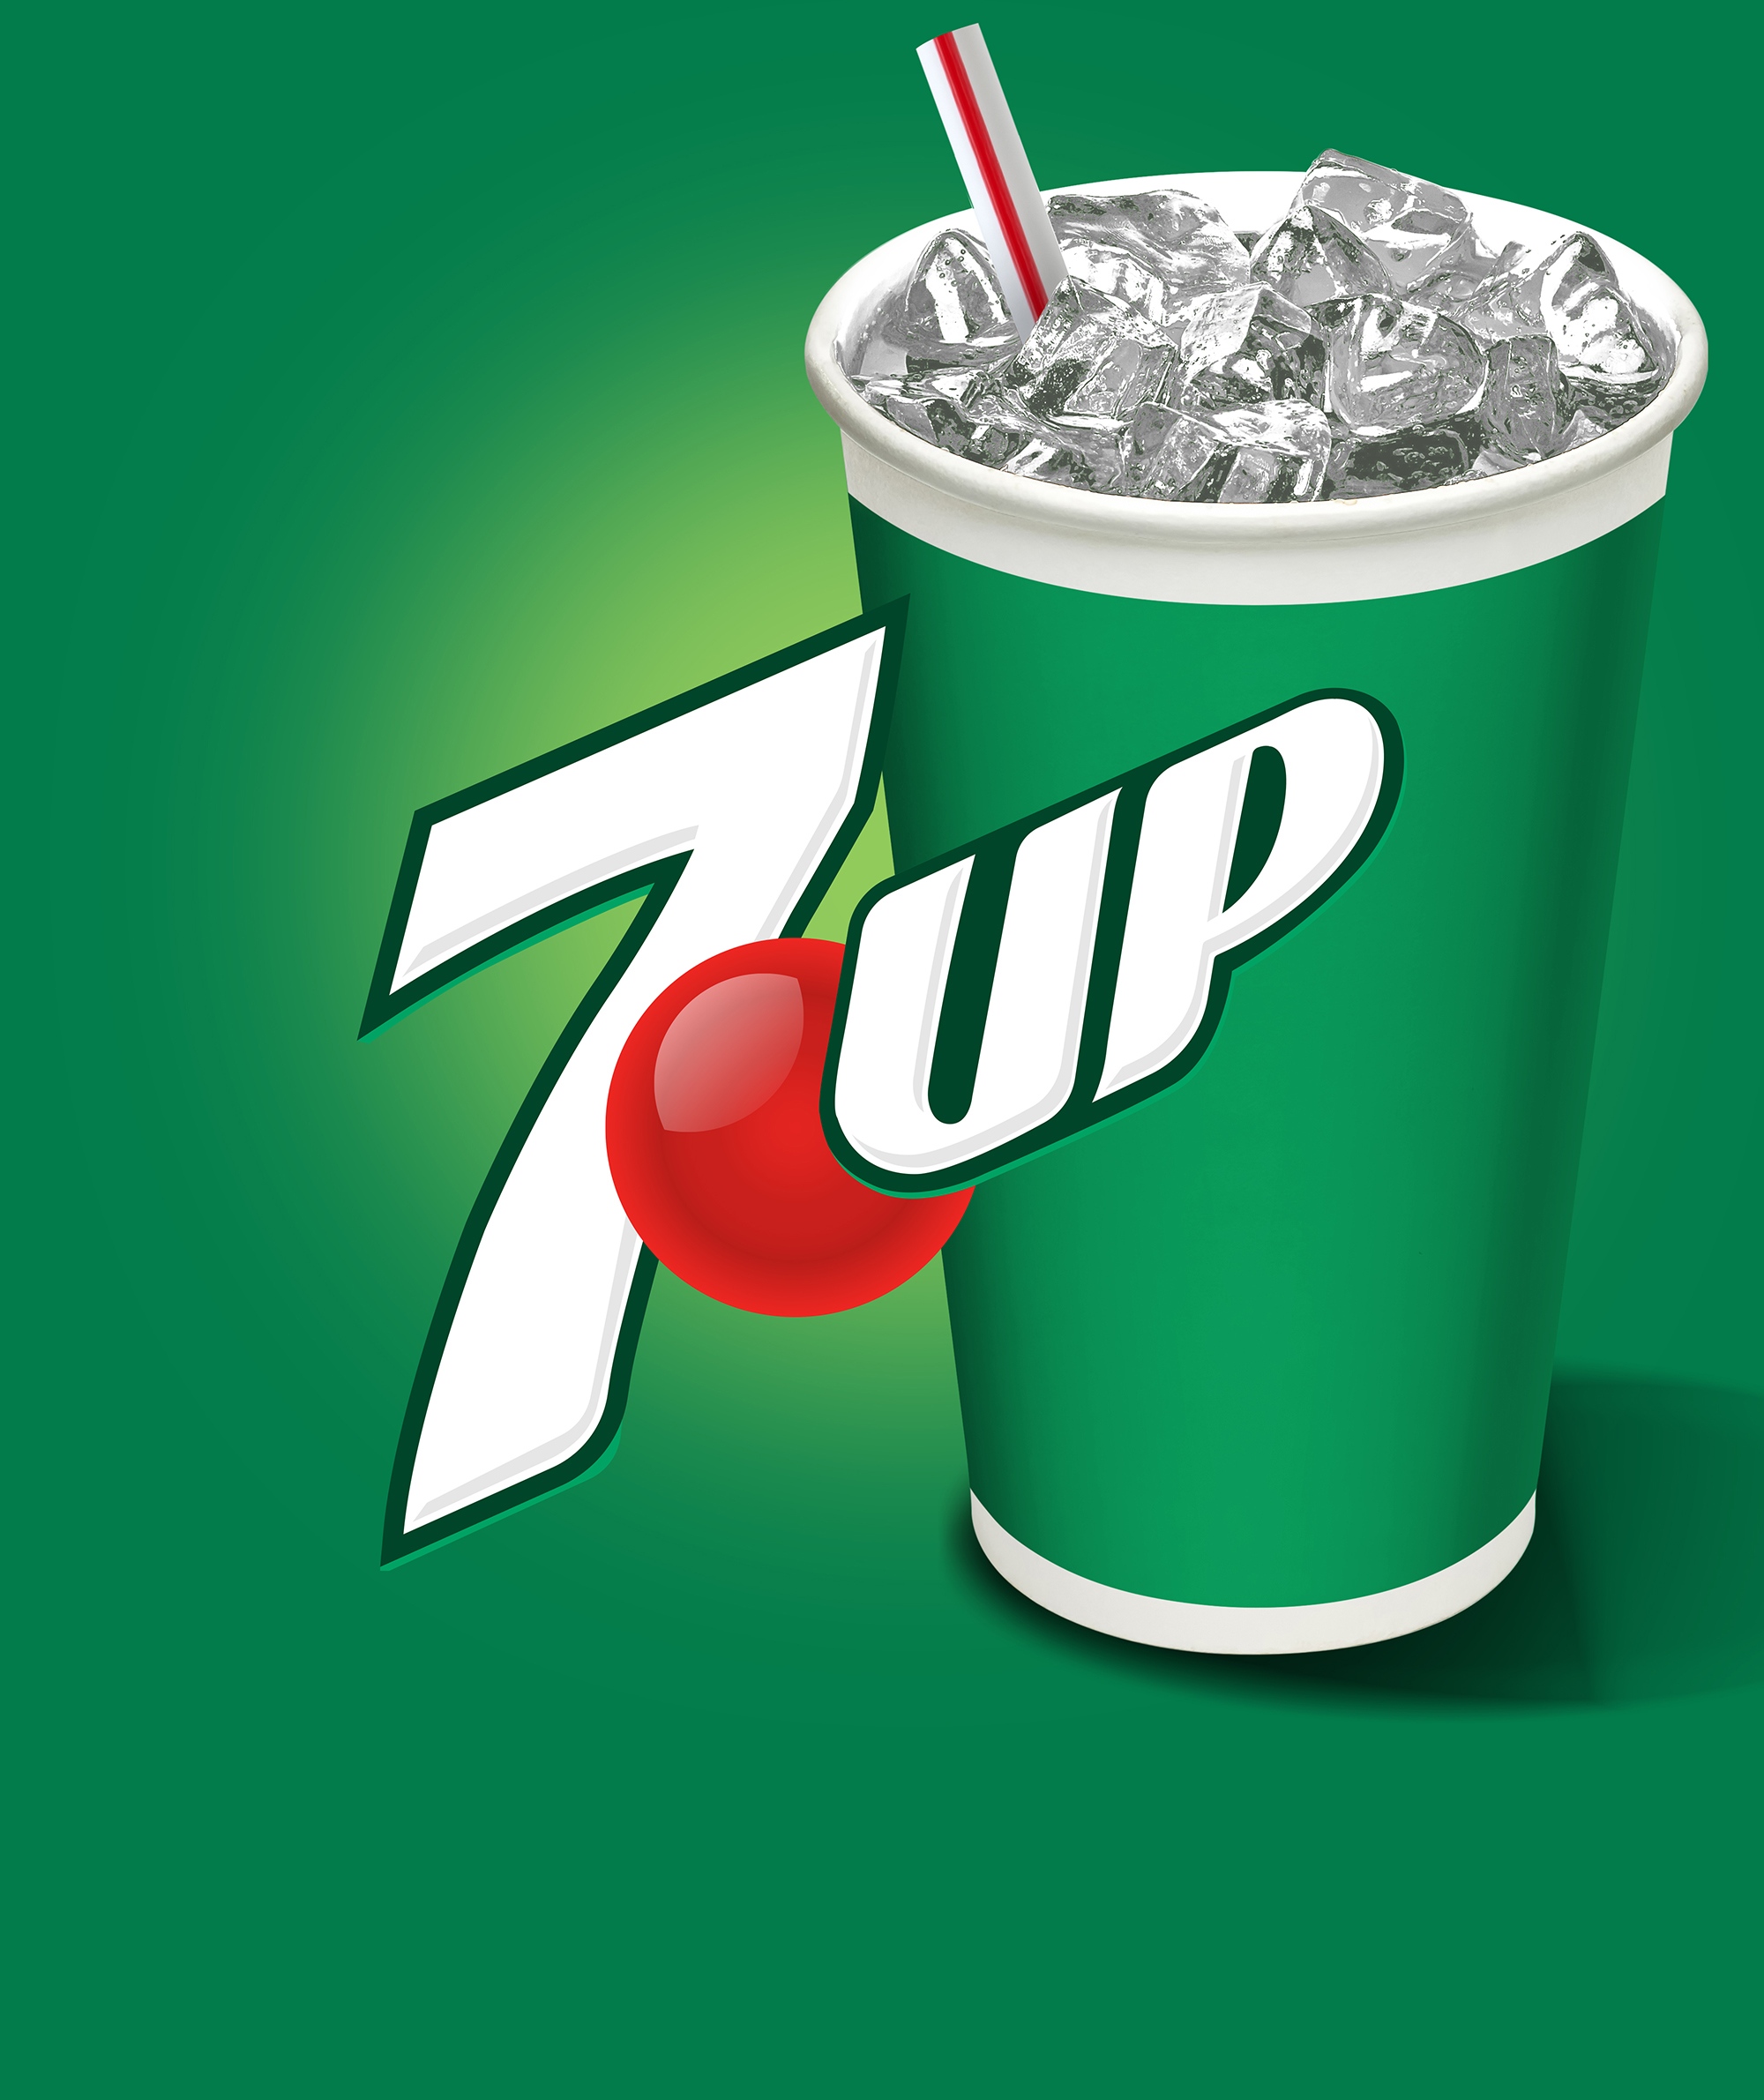 Flavor Smart Keurig Dr. Pepper Brands - 7Up the UNcola